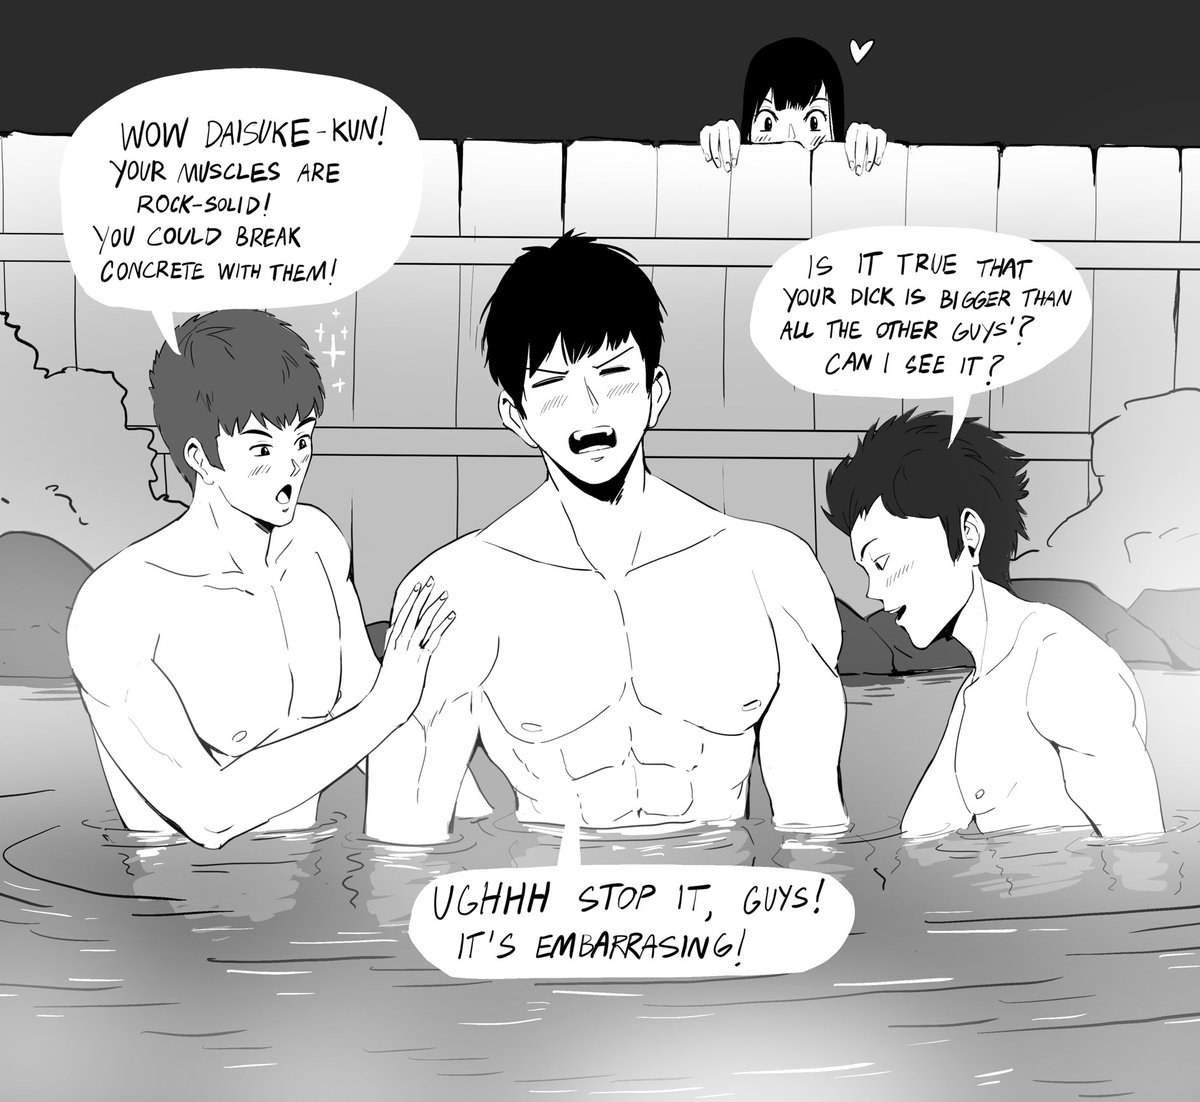 Reverse anime hot springs scene 